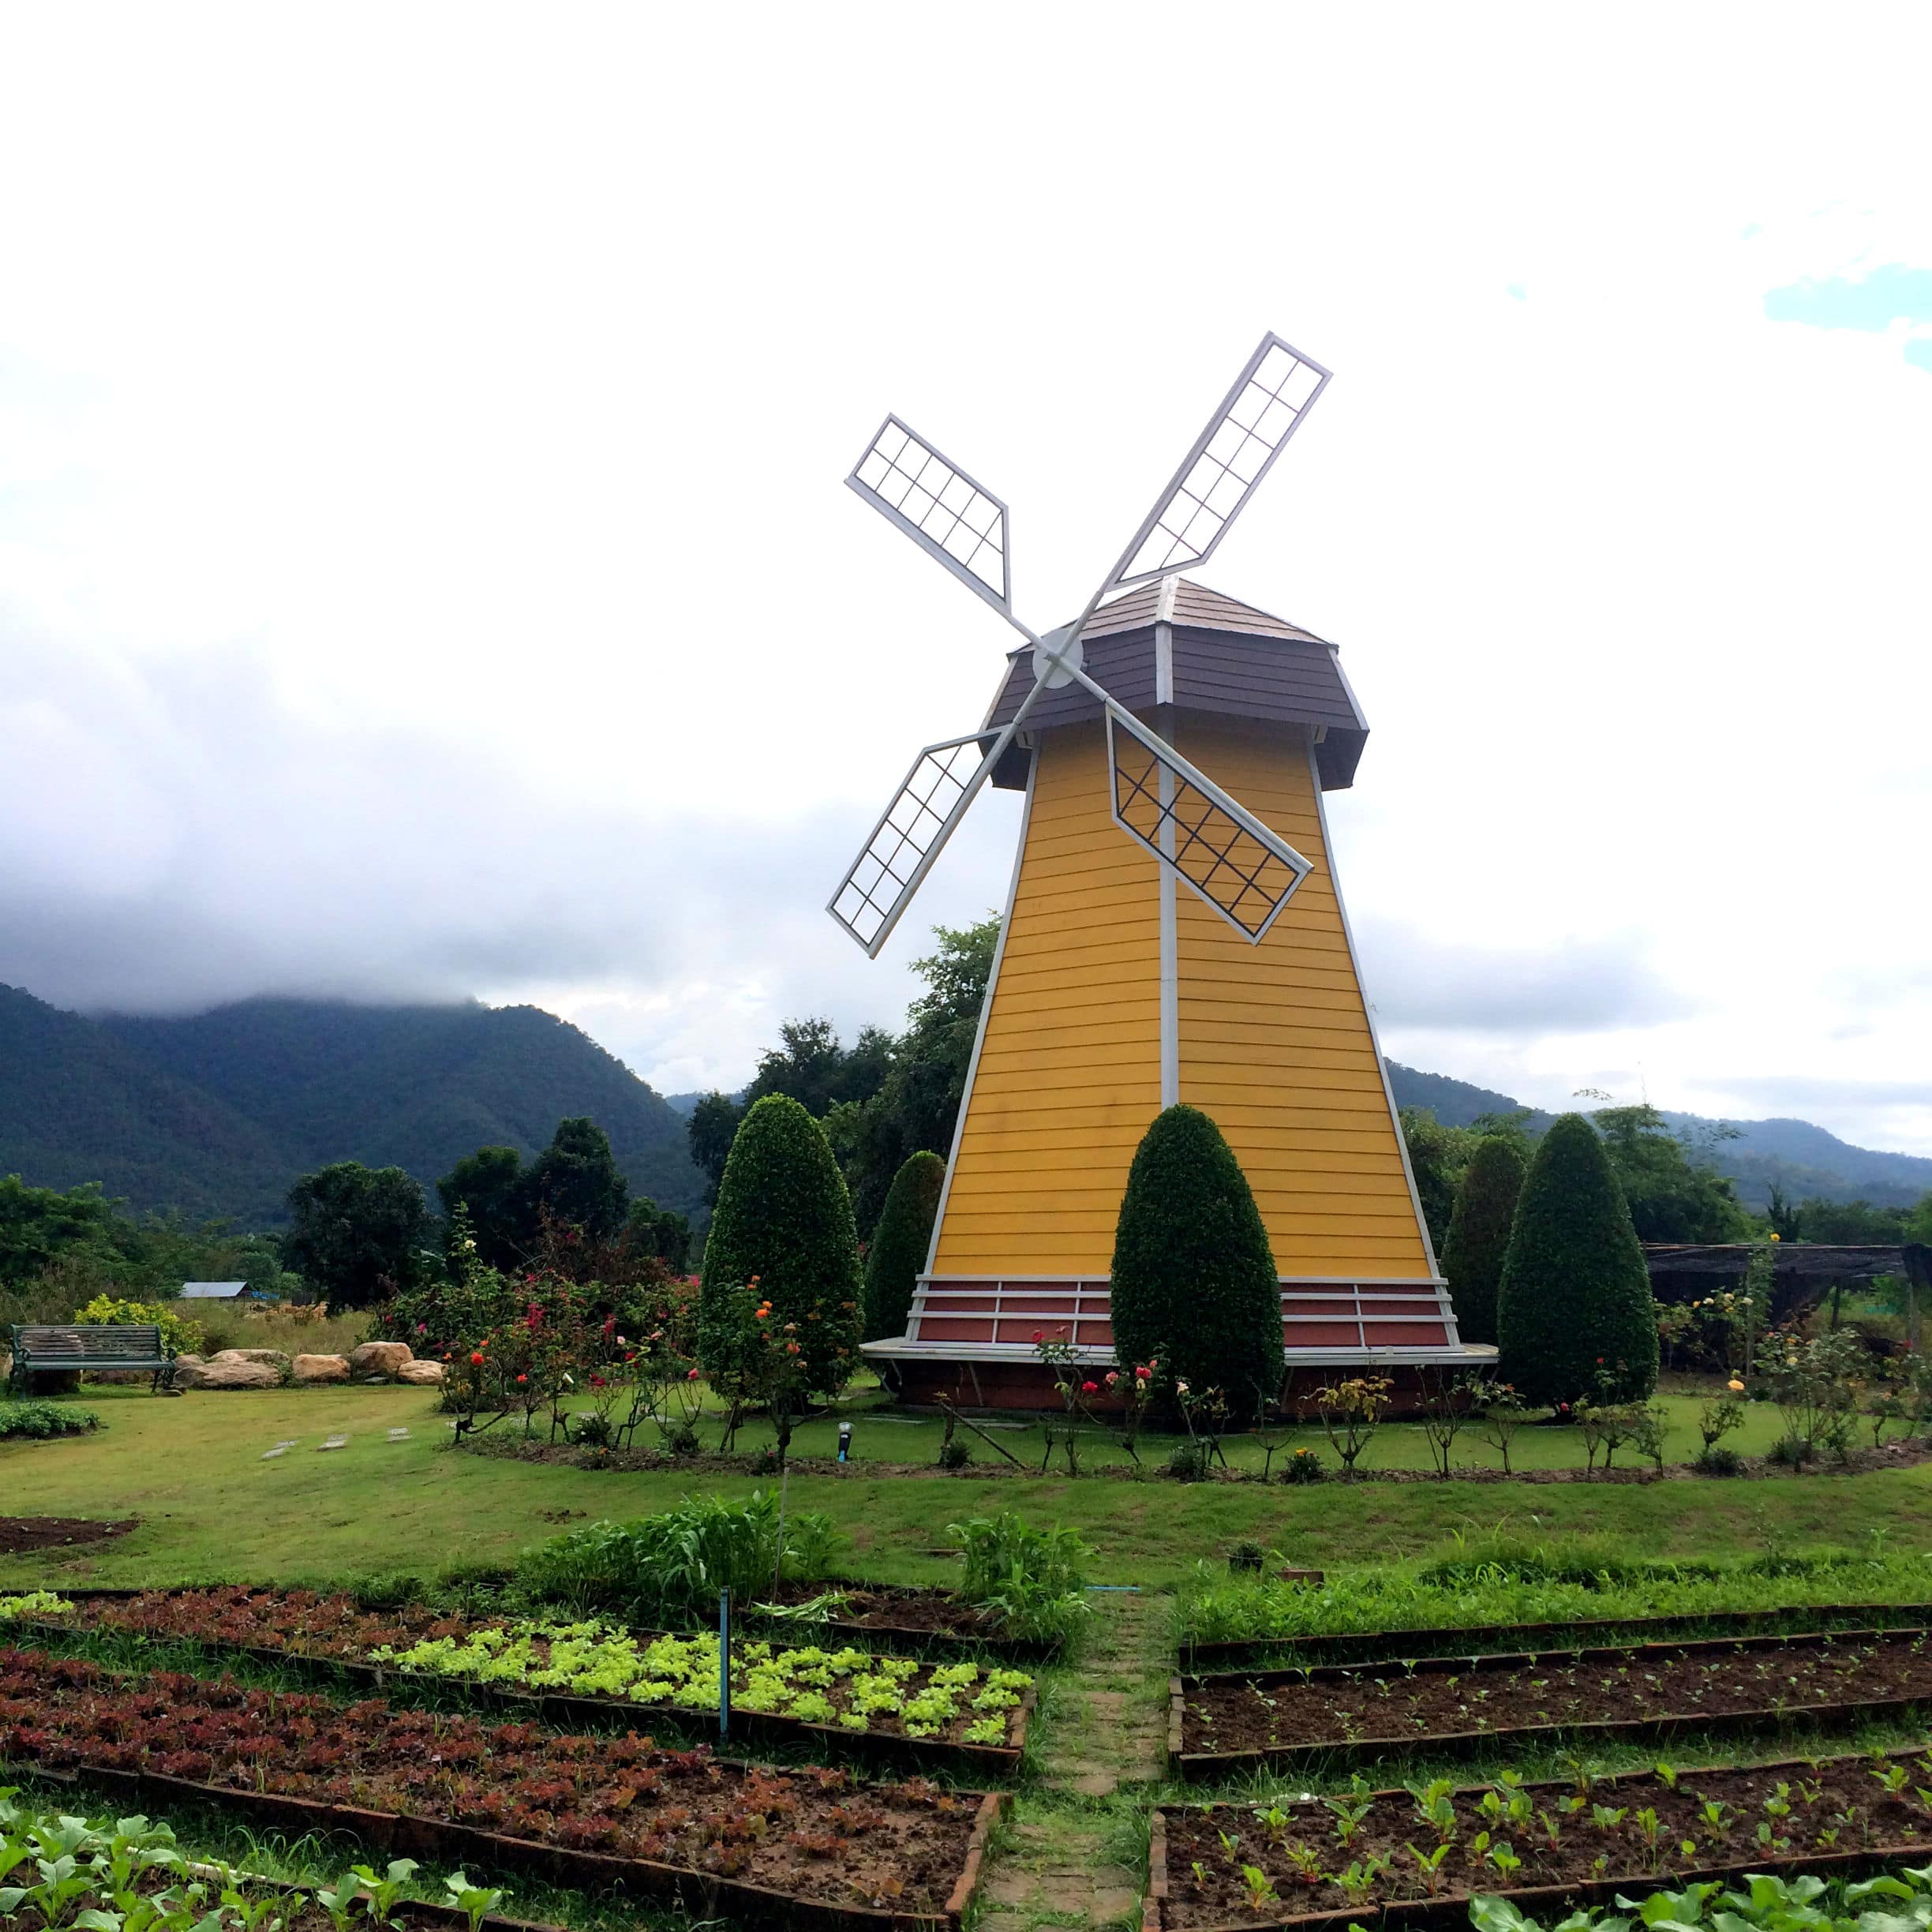 [TRAVELDIARY] Pai im Norden Thailands Pai-Norden-Thailands-Chainag-Mai-Windmühle-wunderschöne-landschaft-tal-berge-reiseblog-fashionzauber